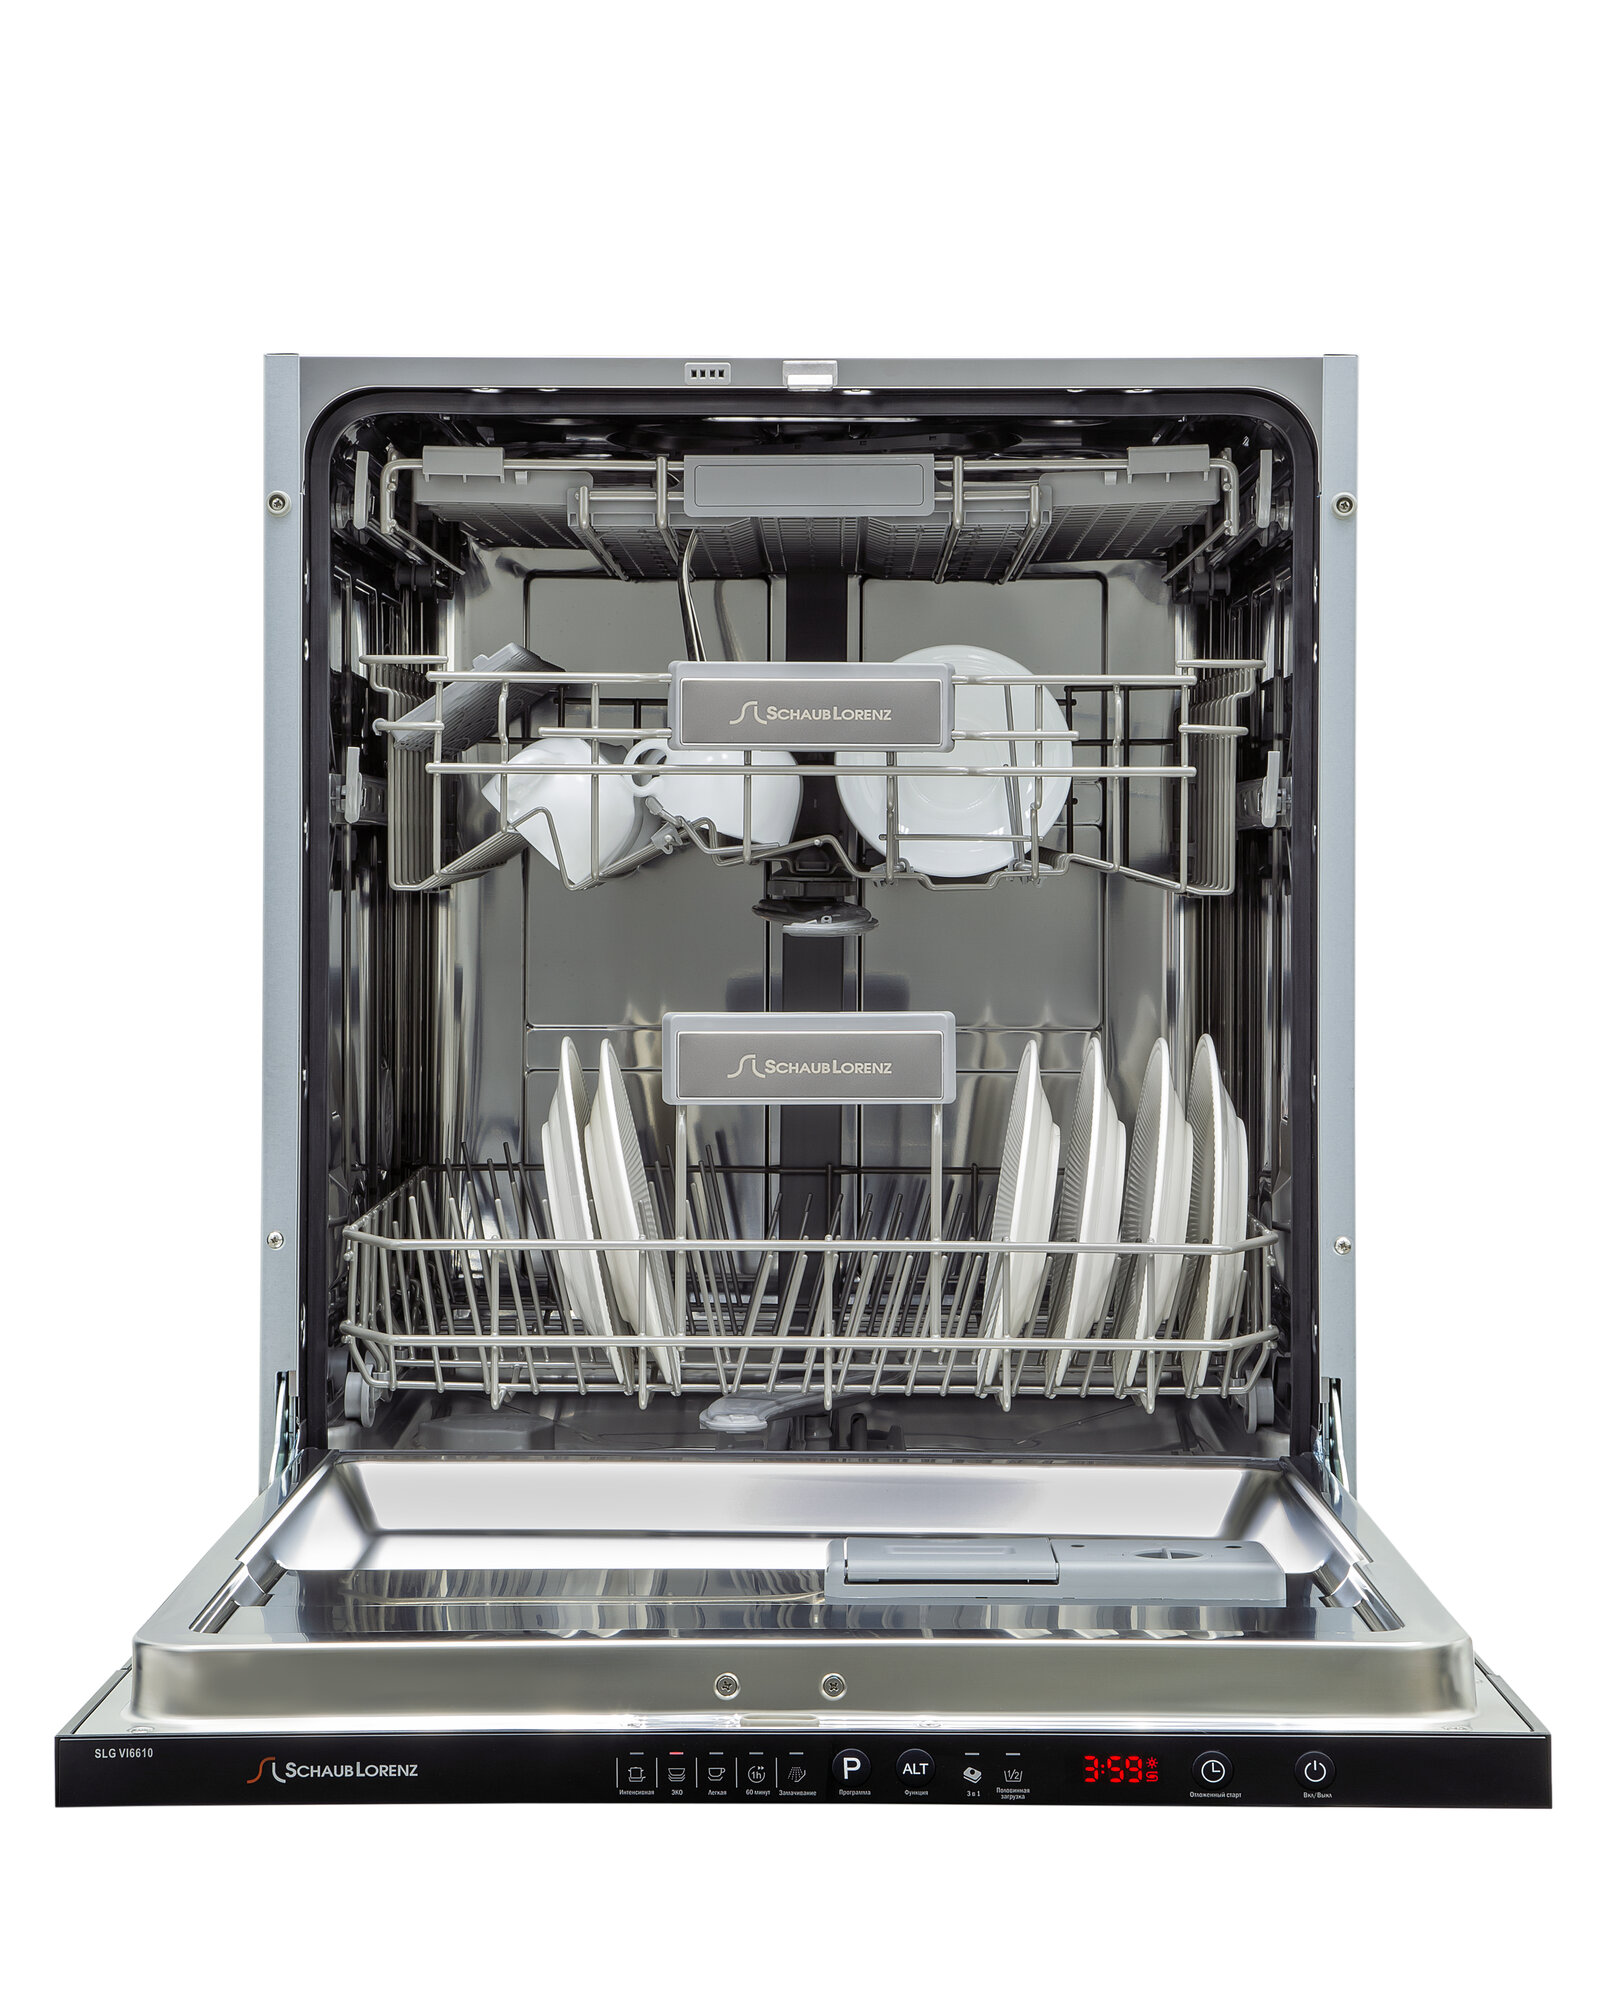 Посудомоечная машина встраиваемая Schaub Lorenz SLG VI6610 60см турбосушка 3 корзина луч на полу защита от протечек аквастоп